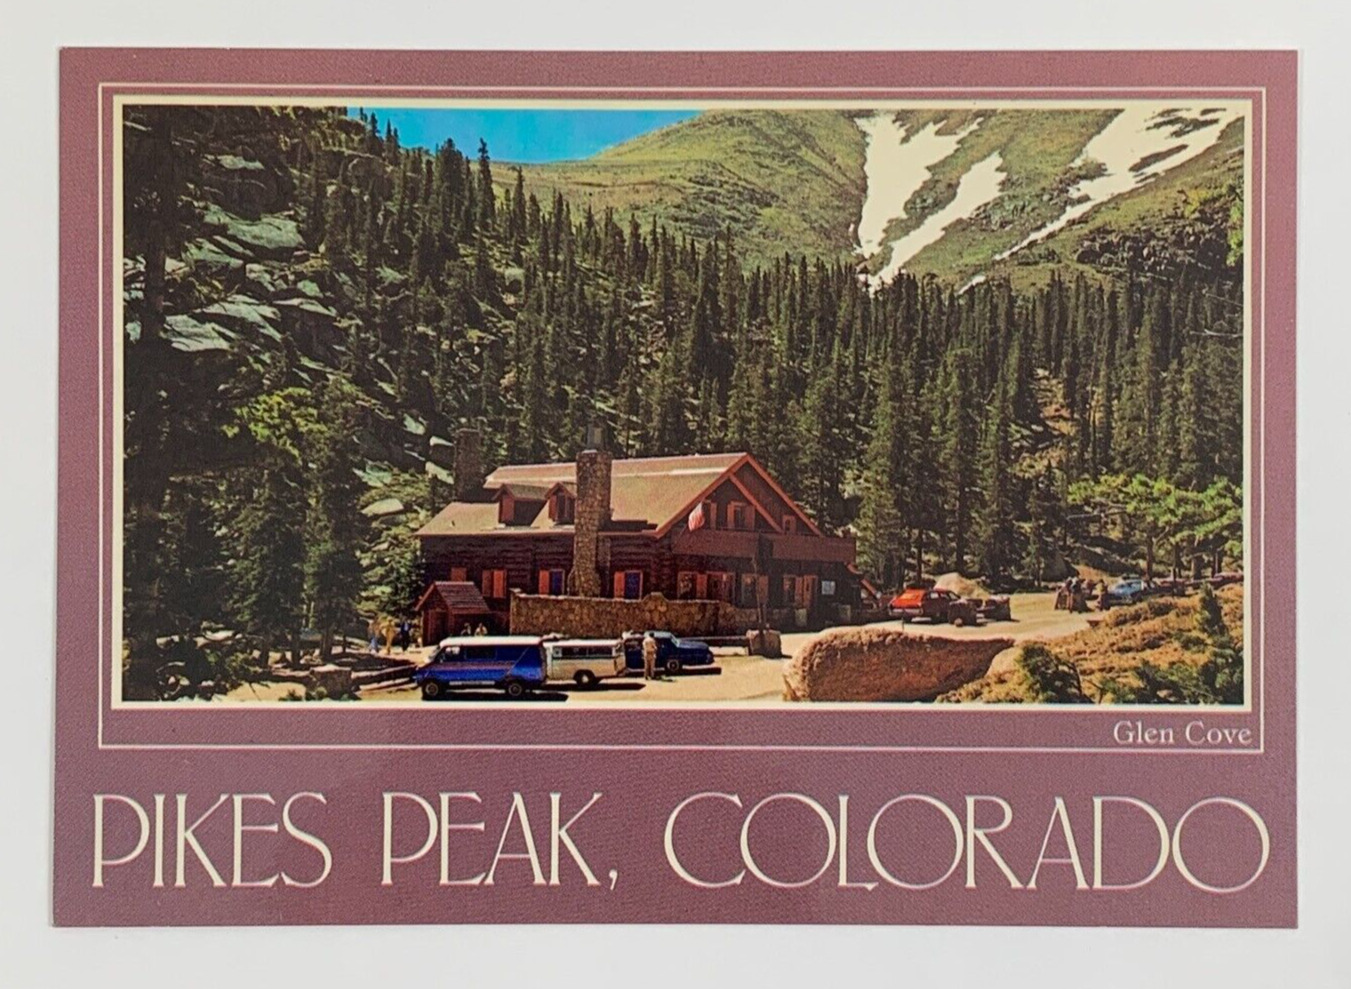 Glen Cove Pikes Peak Colorado Postcard Unposted